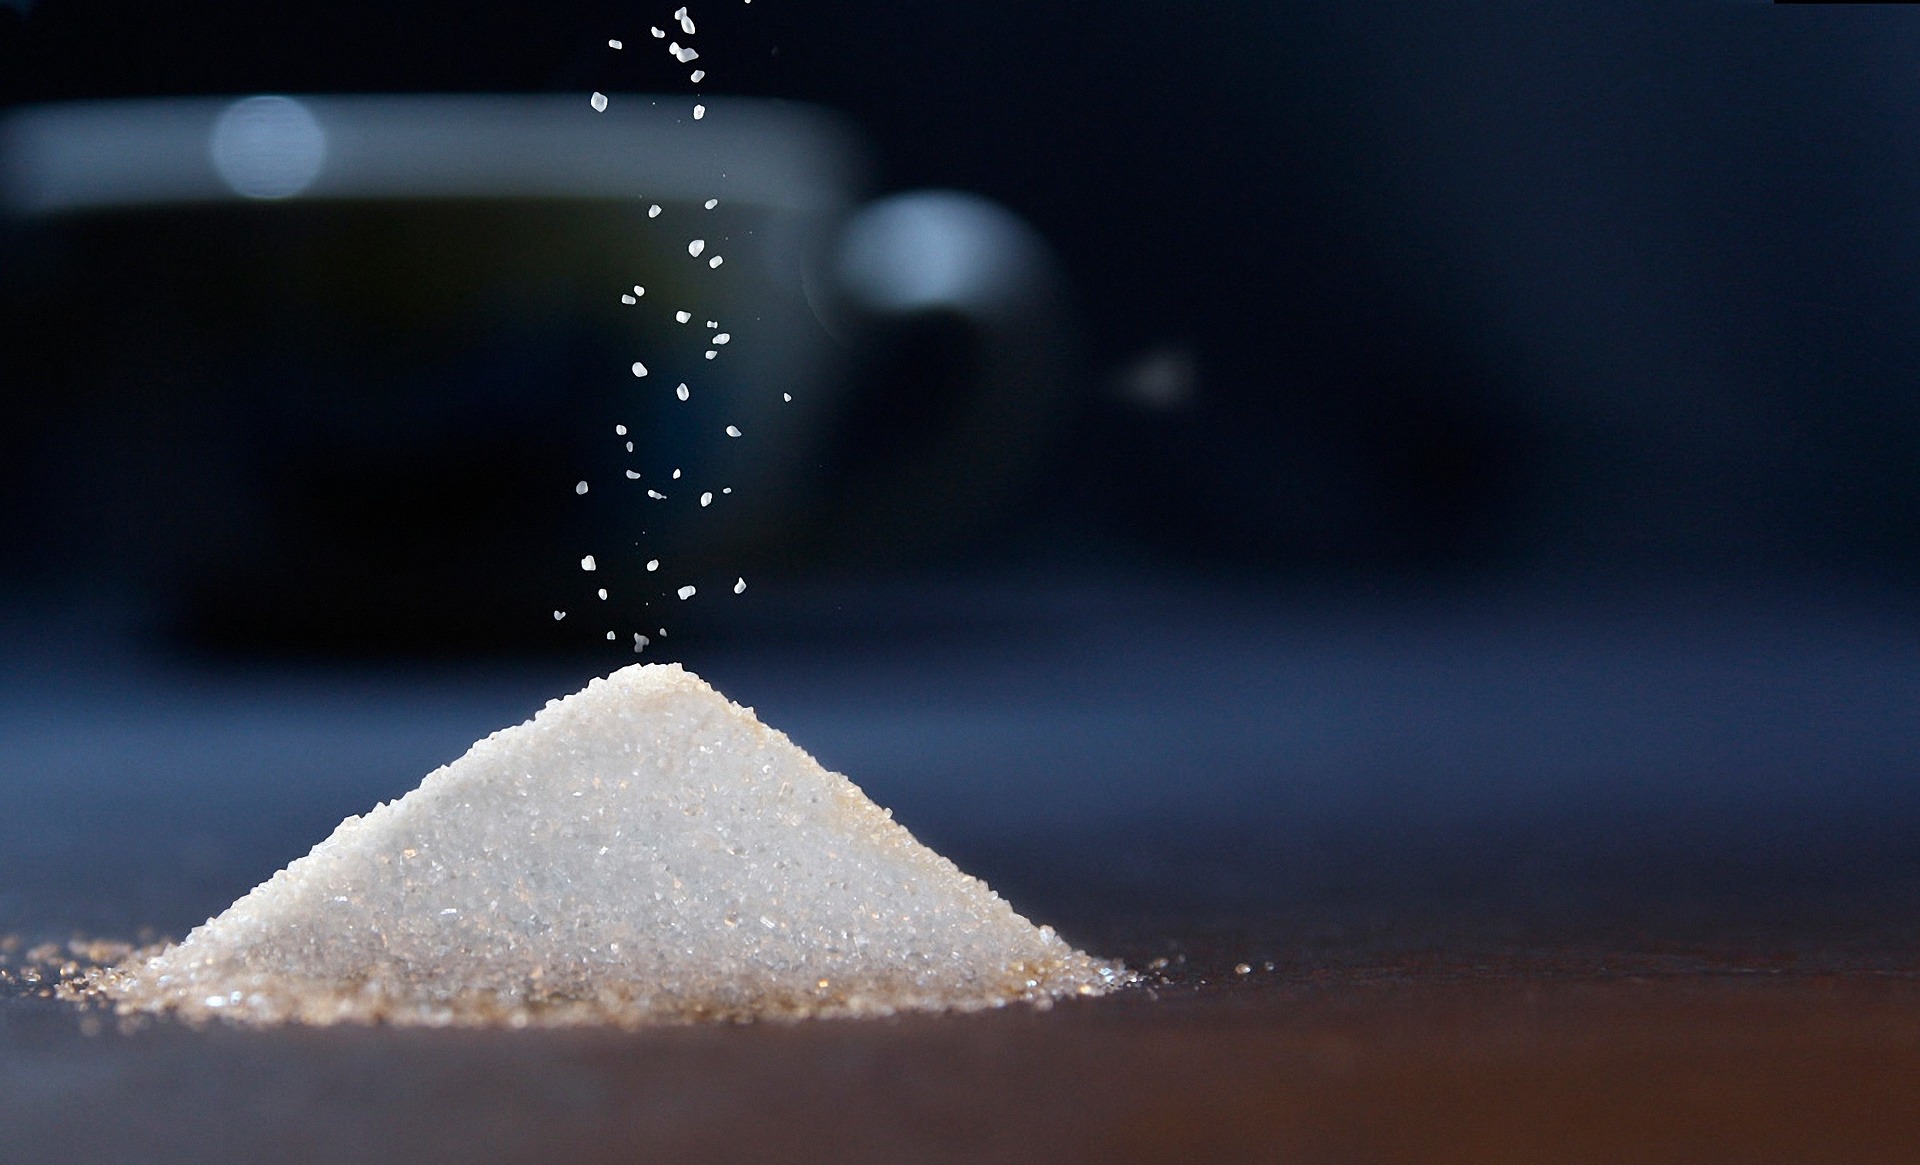 Warum sie die Zufuhr von Zucker, Salz und Fetten reduzieren sollten